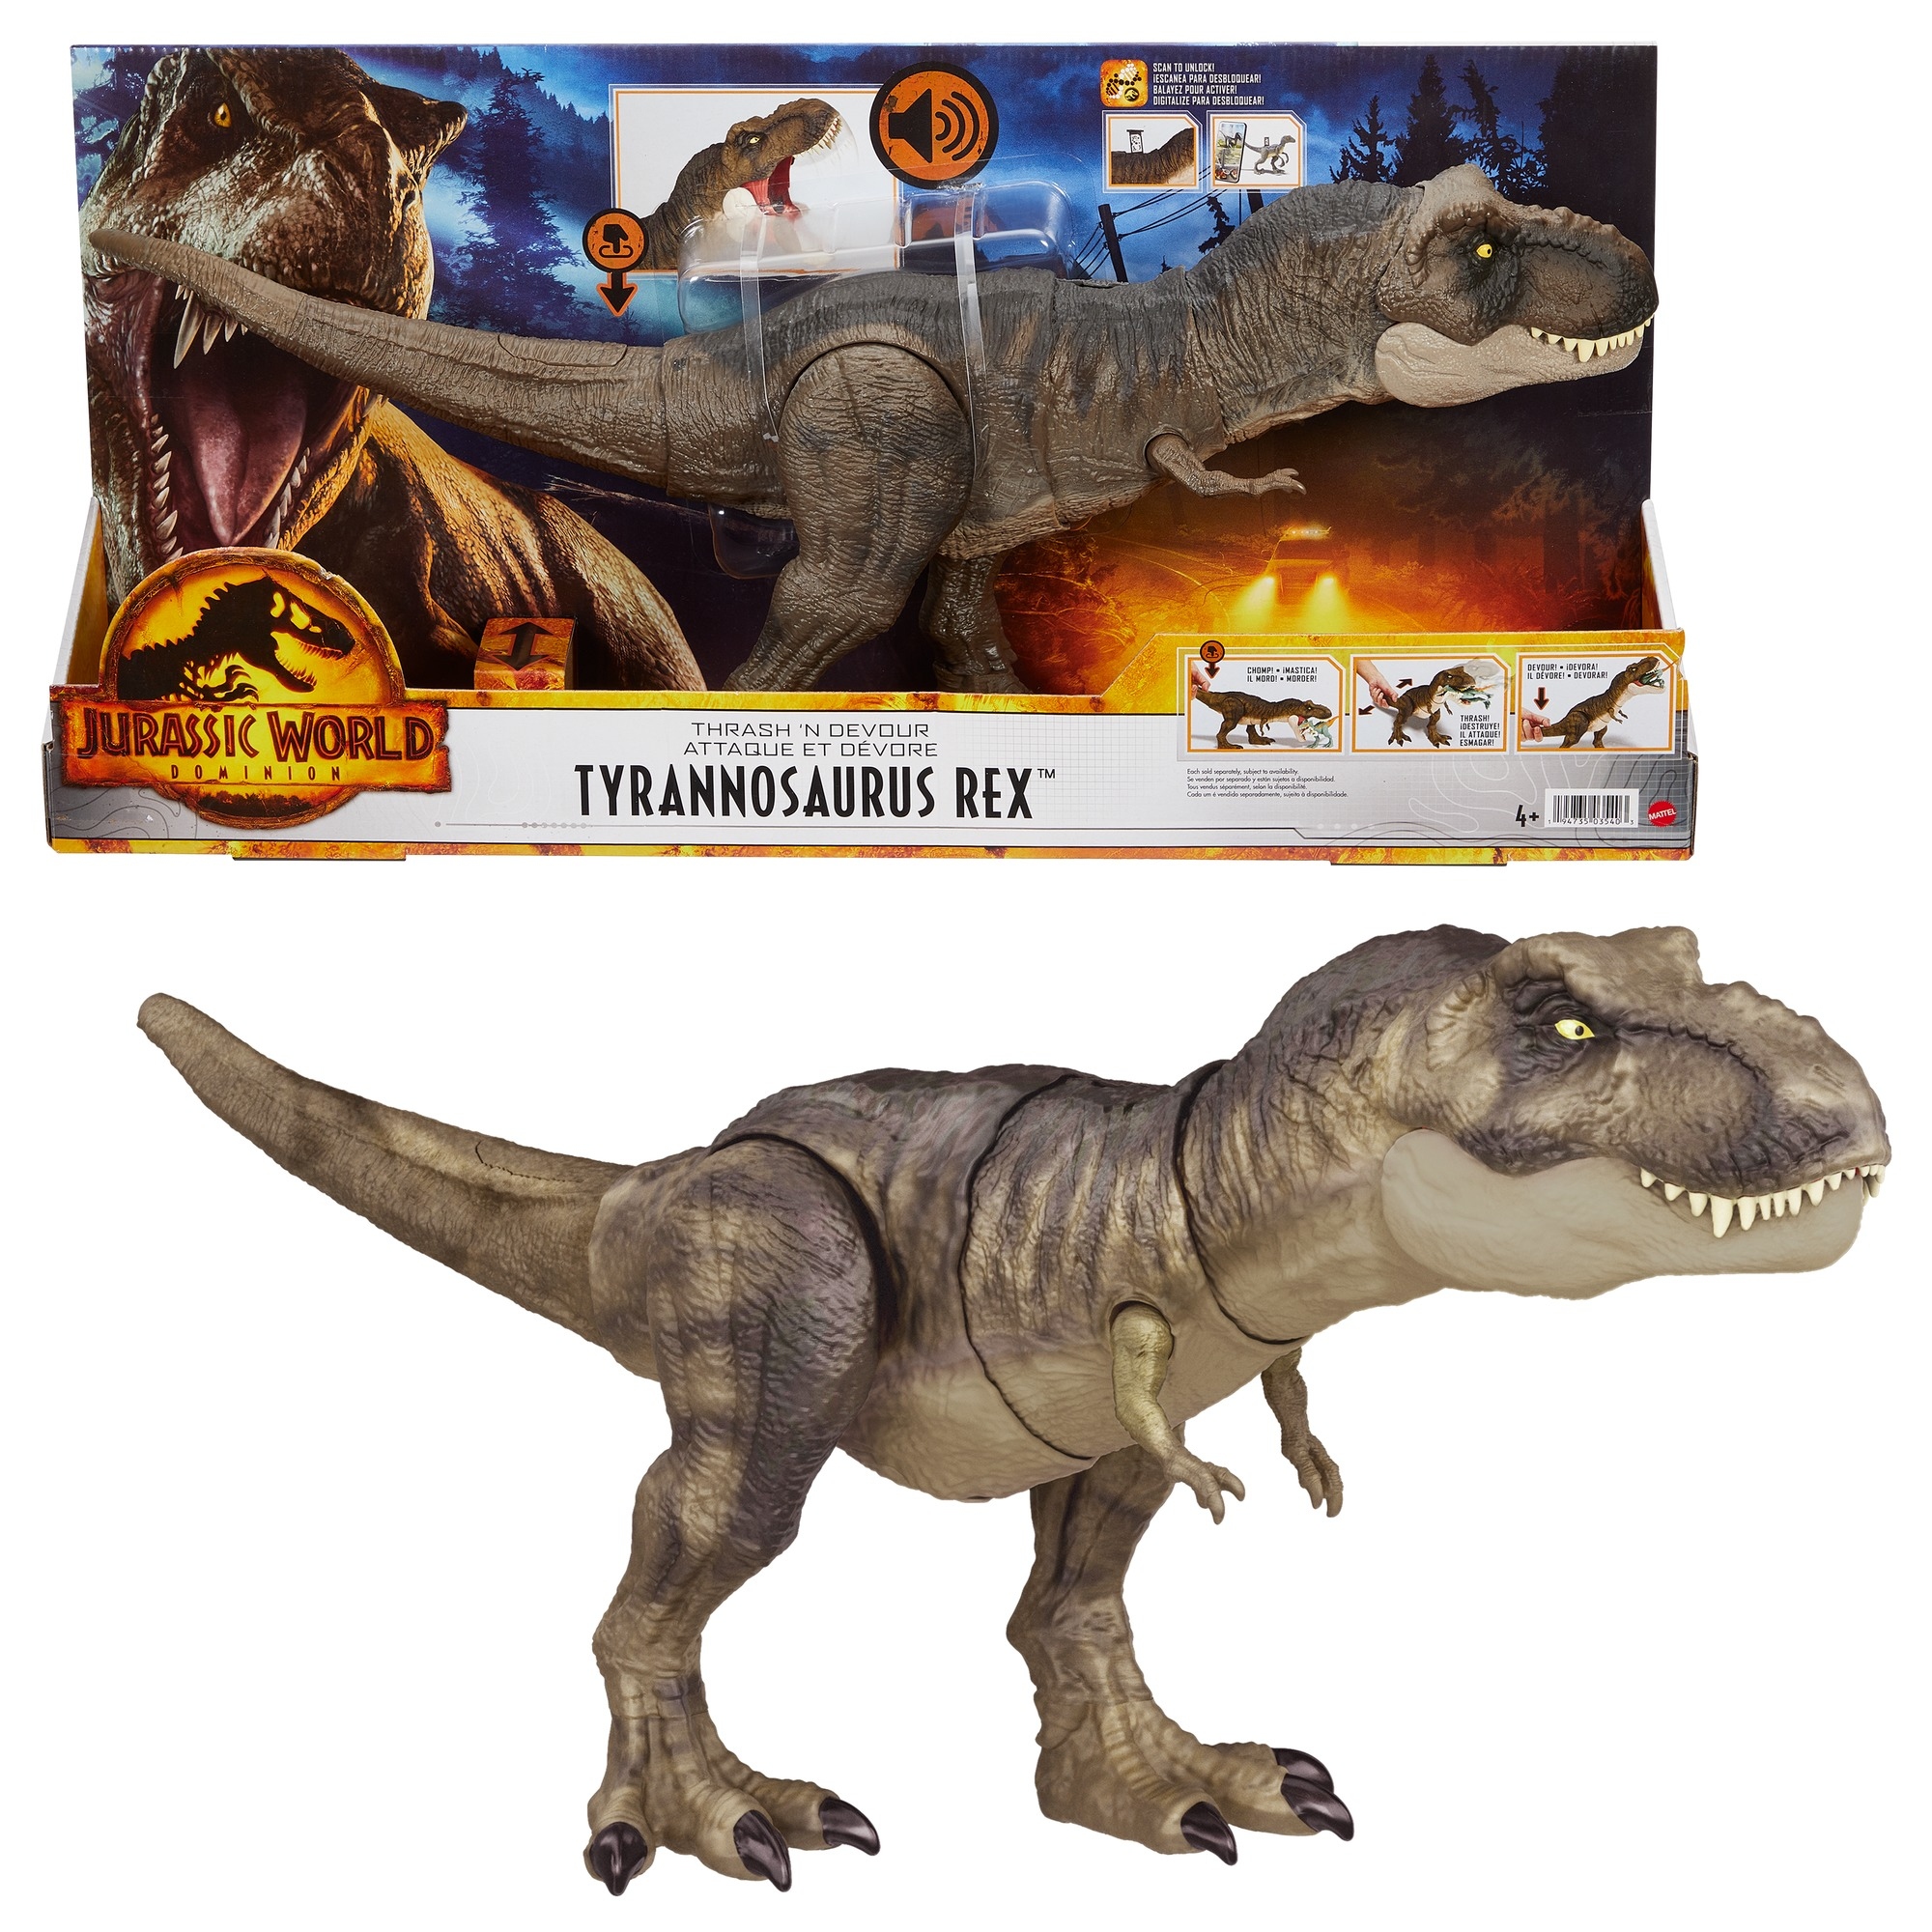 JURASSIC WORLD DOMINION DINOSAUR TYRANNOSAURUS REX Tyrannosaurus Destroy HDY55 Type Action Figure